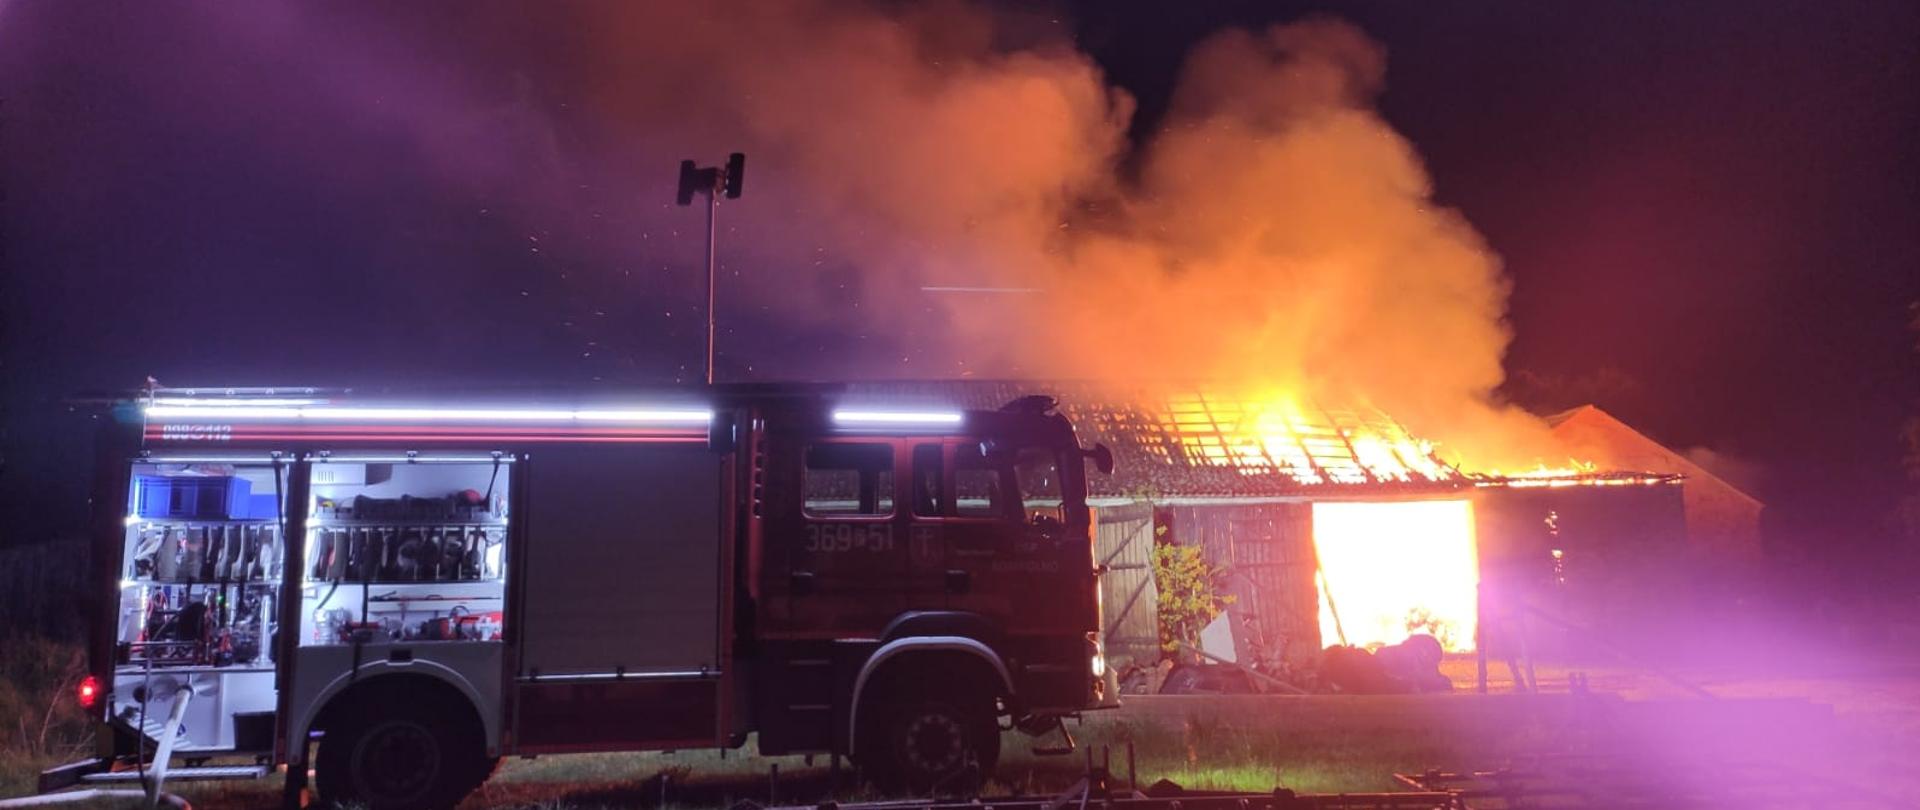 Zdjęcie przedstawia pożar budynku gospodarczego, płomienie wychodzą ponad dach budynku, w tle samochód strażacki